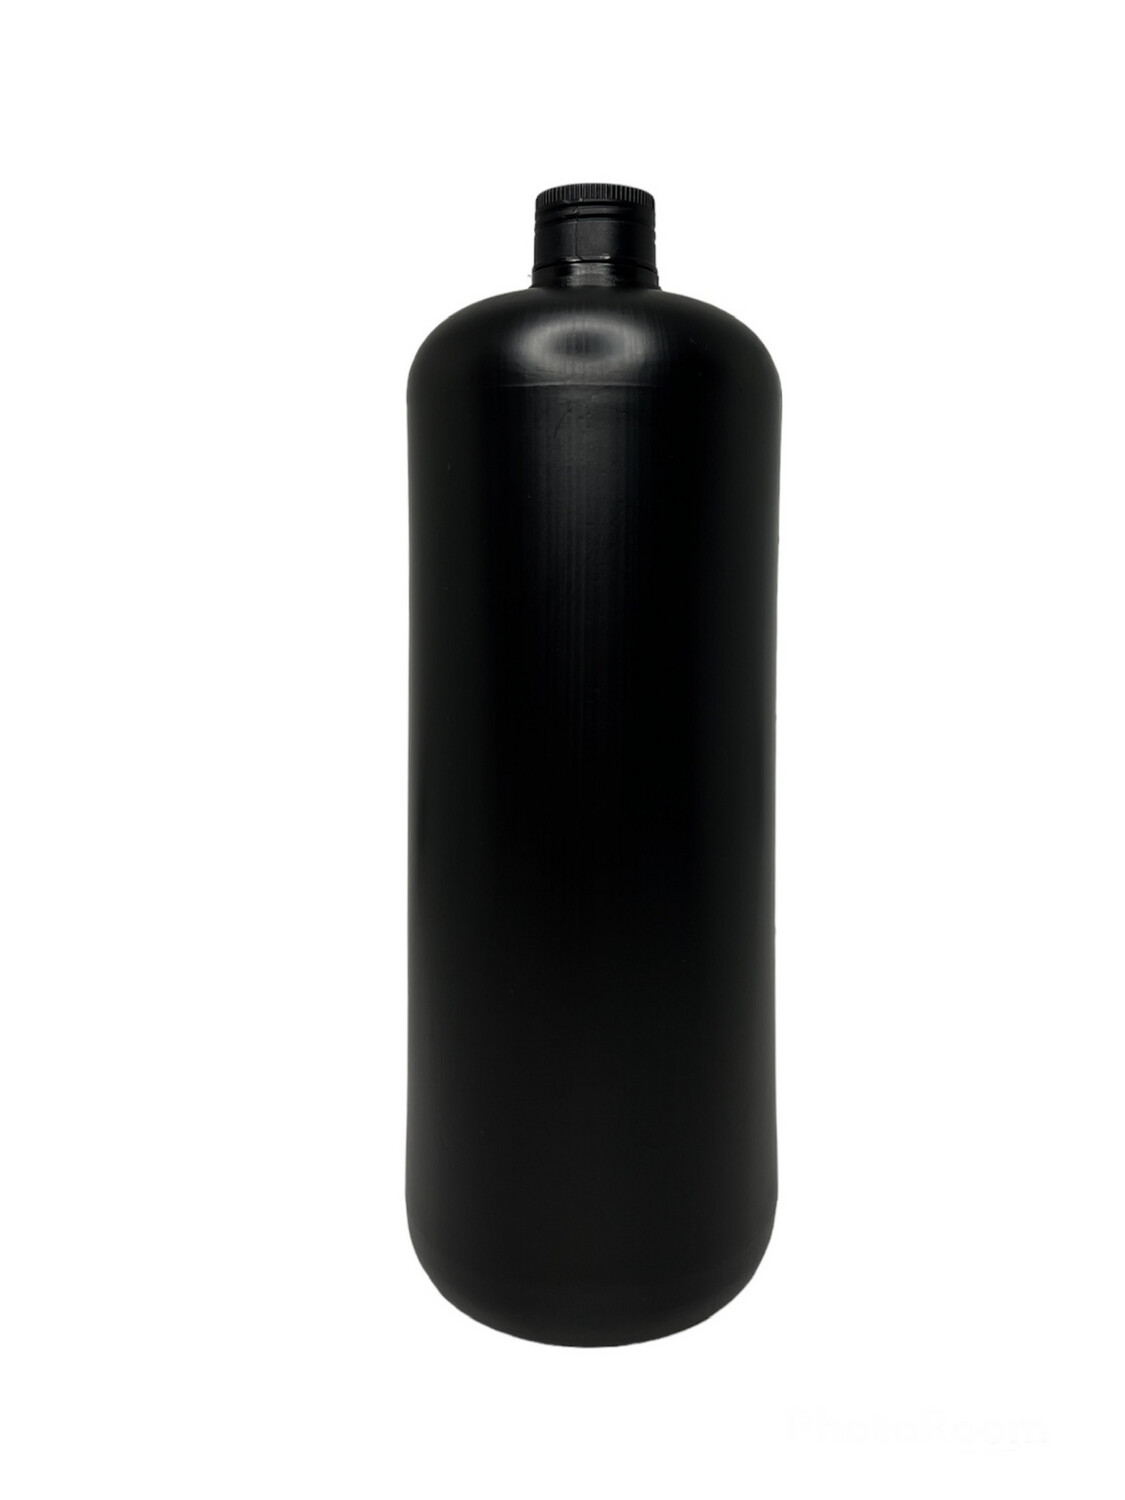 1000ml HDPE Plastic Bottle With Aluminum Fake High Screw Cap - Black